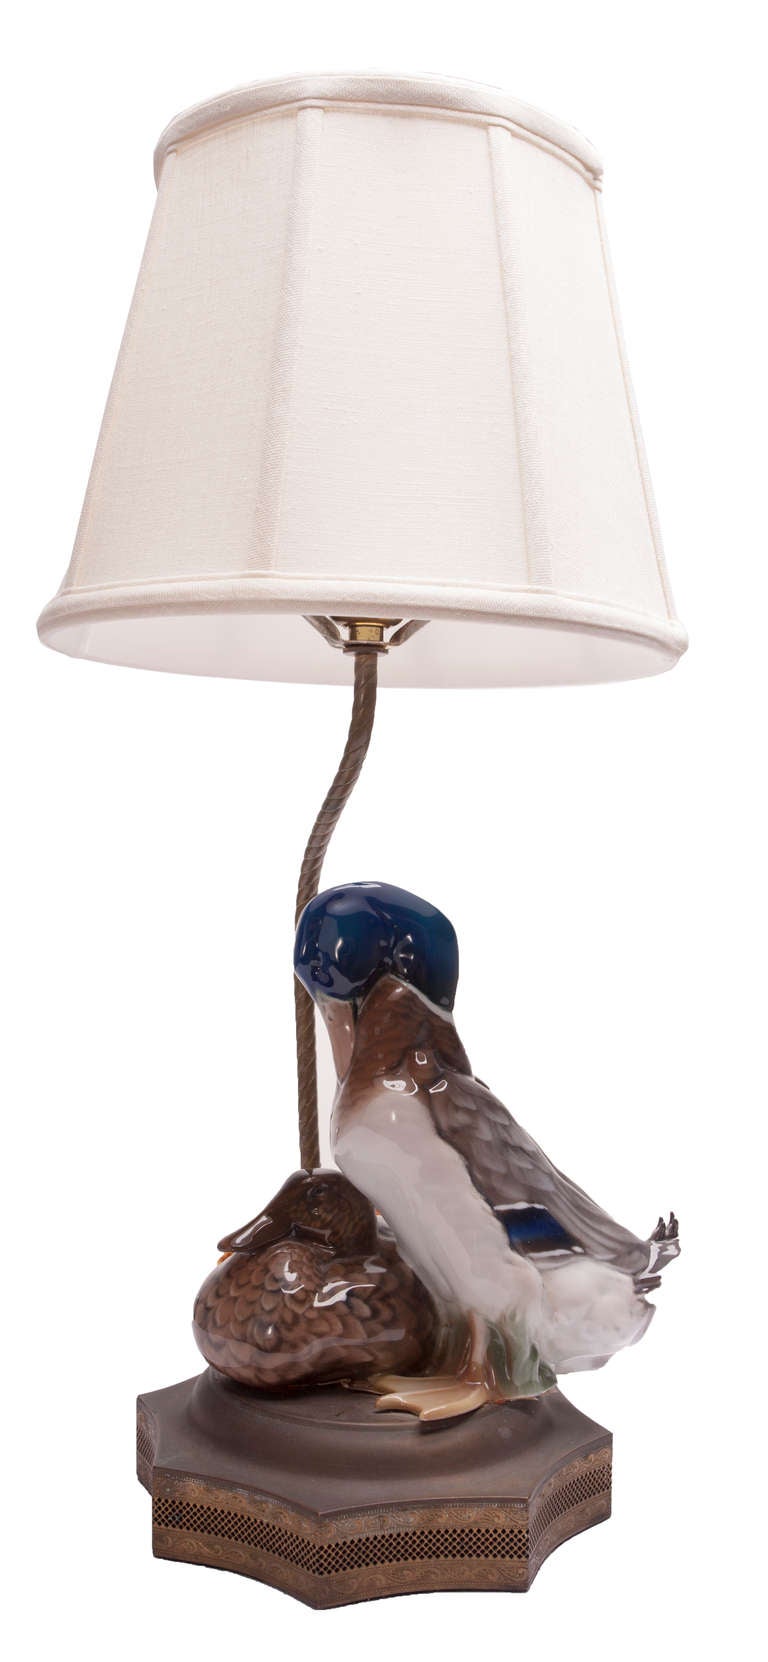 Rosenthal Porzellan Entenpaar, vom Künstler W. Zugel als Lampe montiert, feine filigrane Messingbeschläge auf einem achtseitigen Sternsockel, Seilrohr trägt einen Leinenschirm mit Fayenceknauf. Professionelle Porzellanreparatur an einem